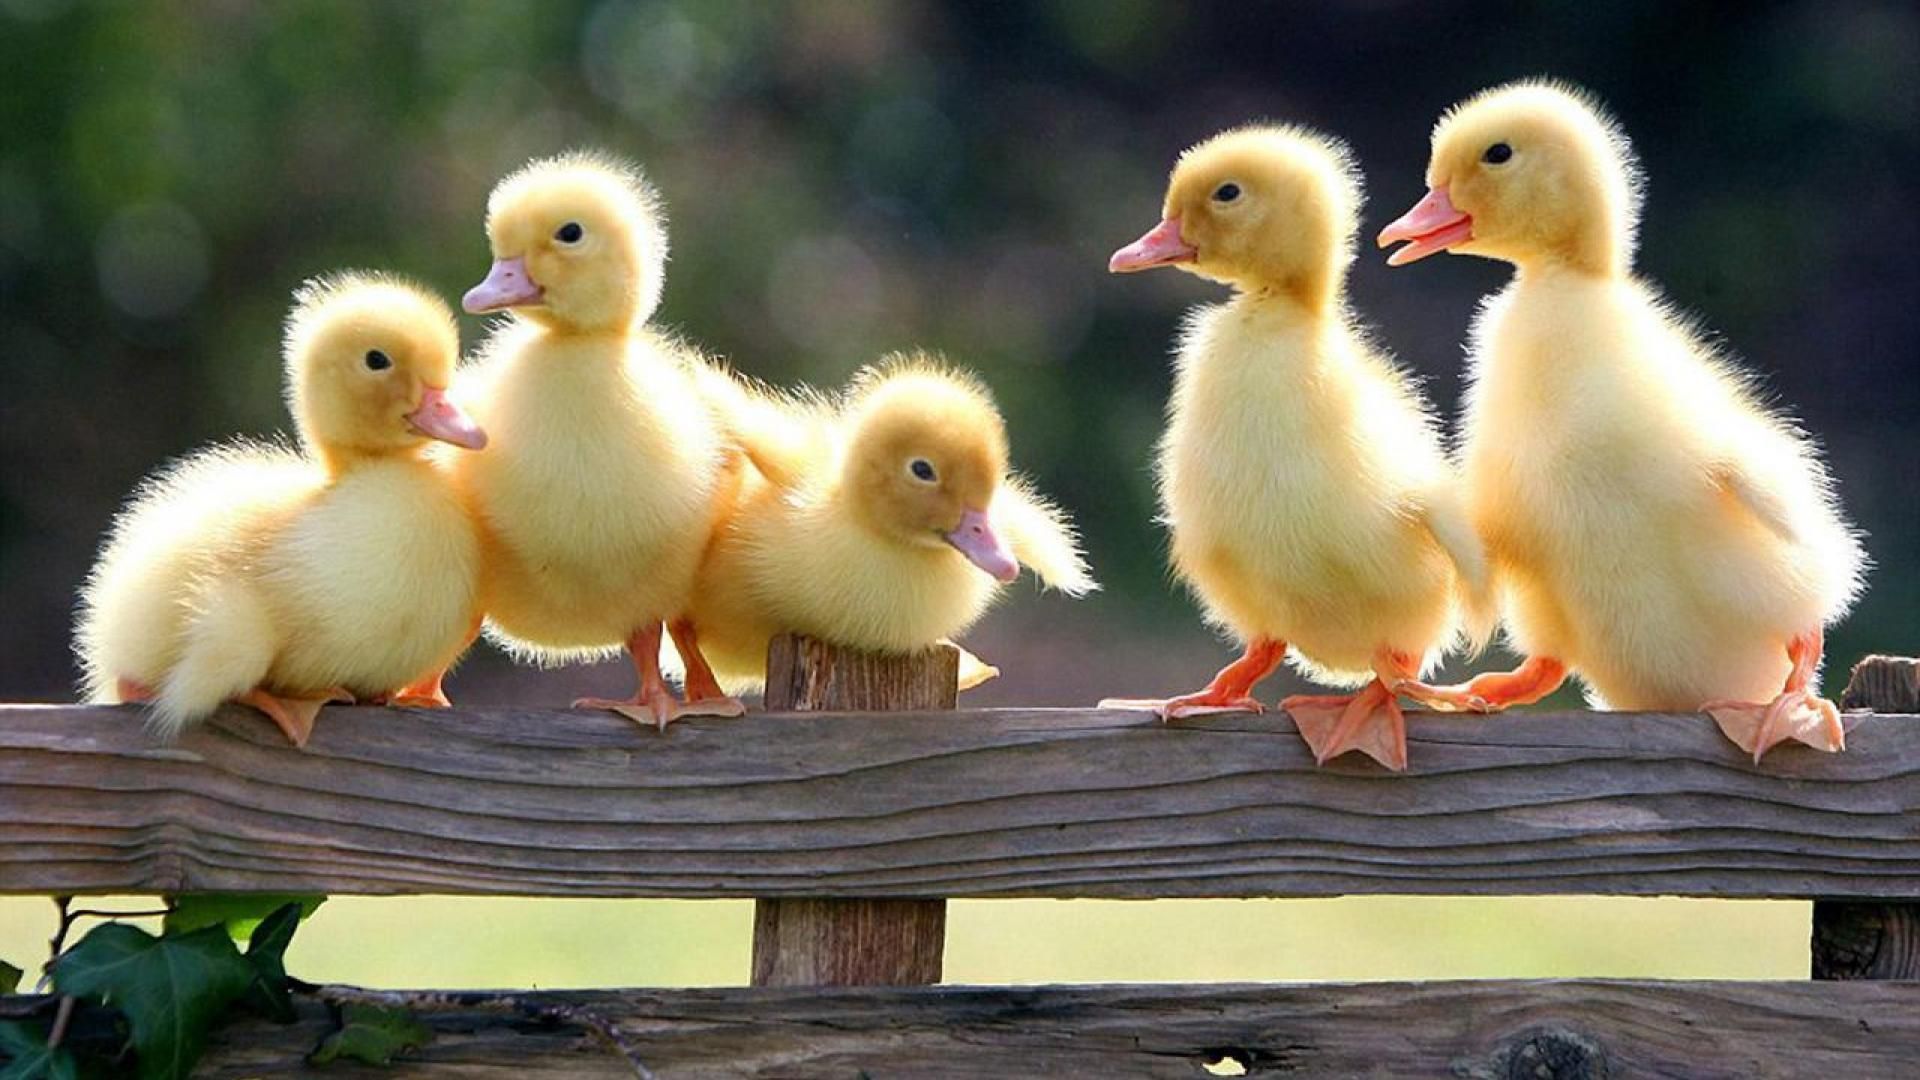 Cute ducklings .com